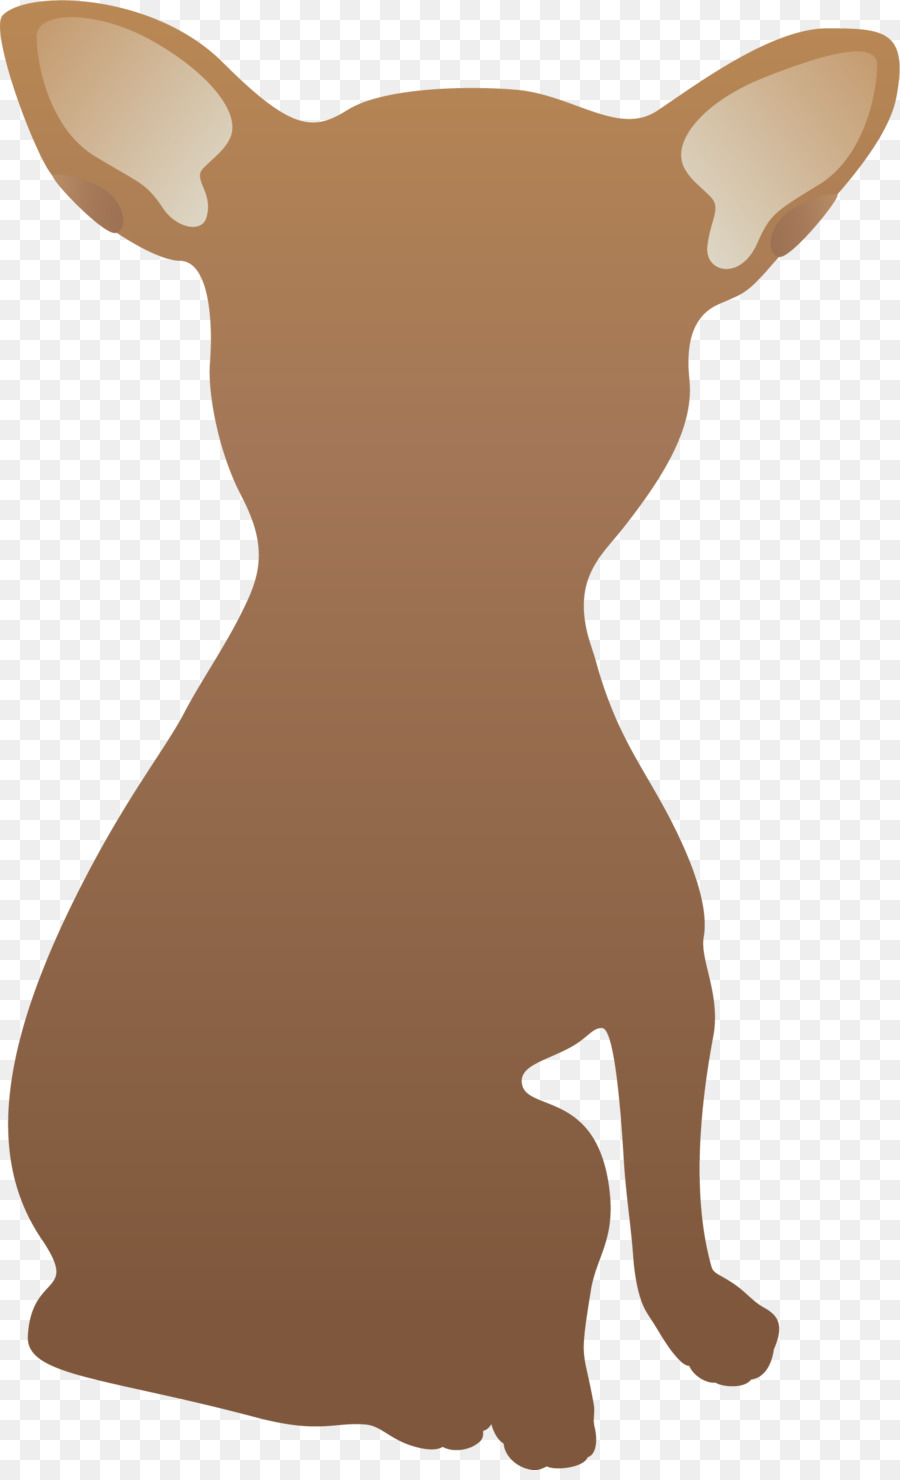 Con Chó Chihuahua truyền hình Trực tiếp Clip nghệ thuật - Tay sơn màu con